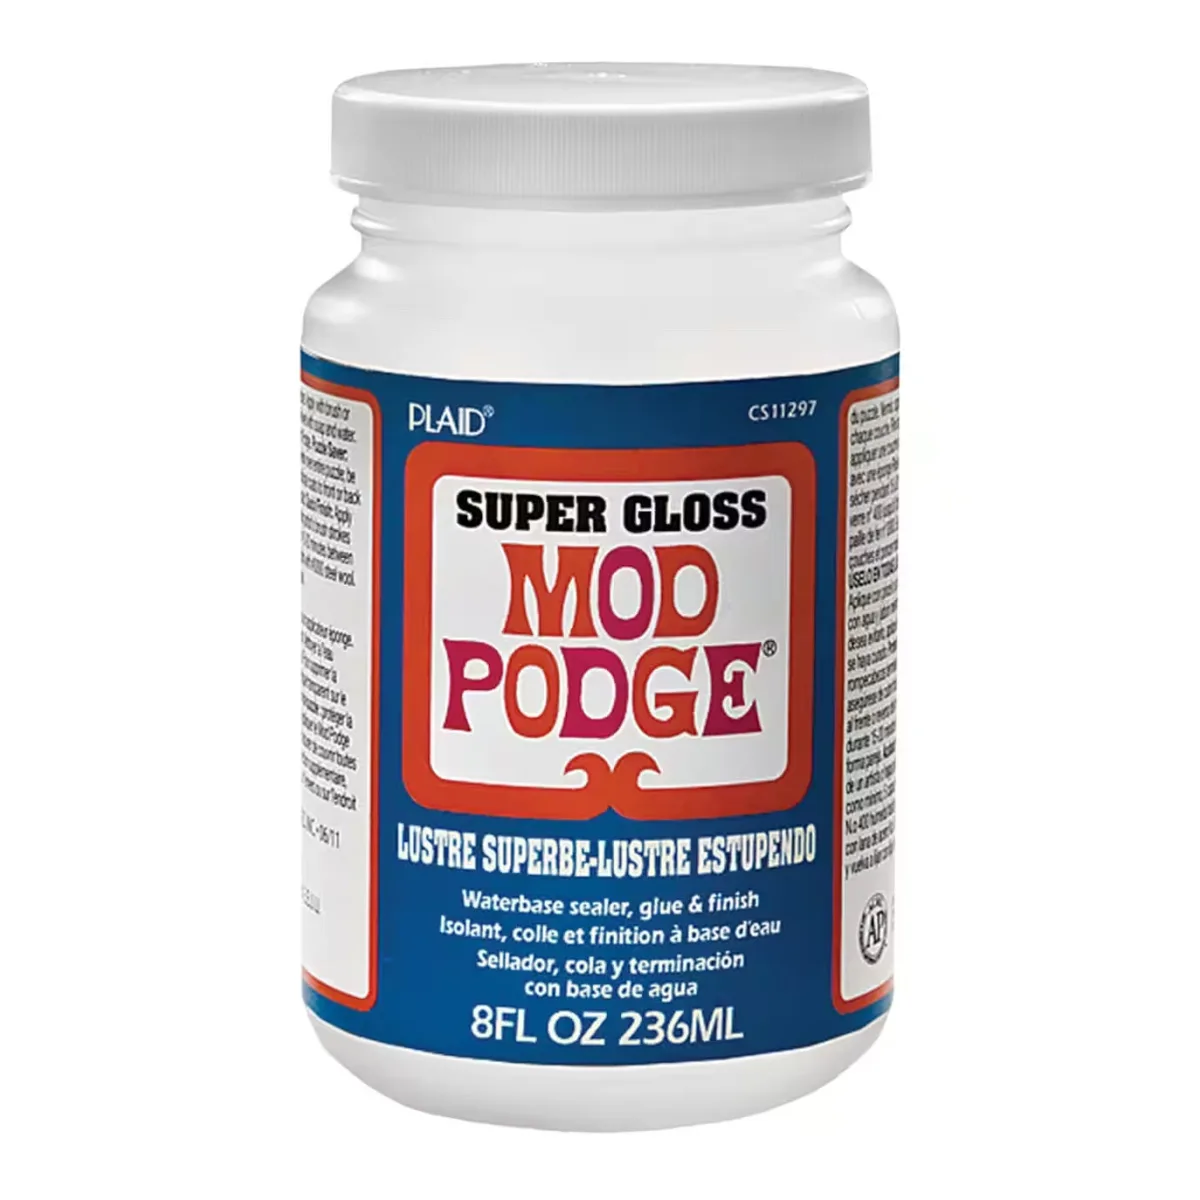 Mod Podge Pearlized Spray Sealer (11-Ounce)